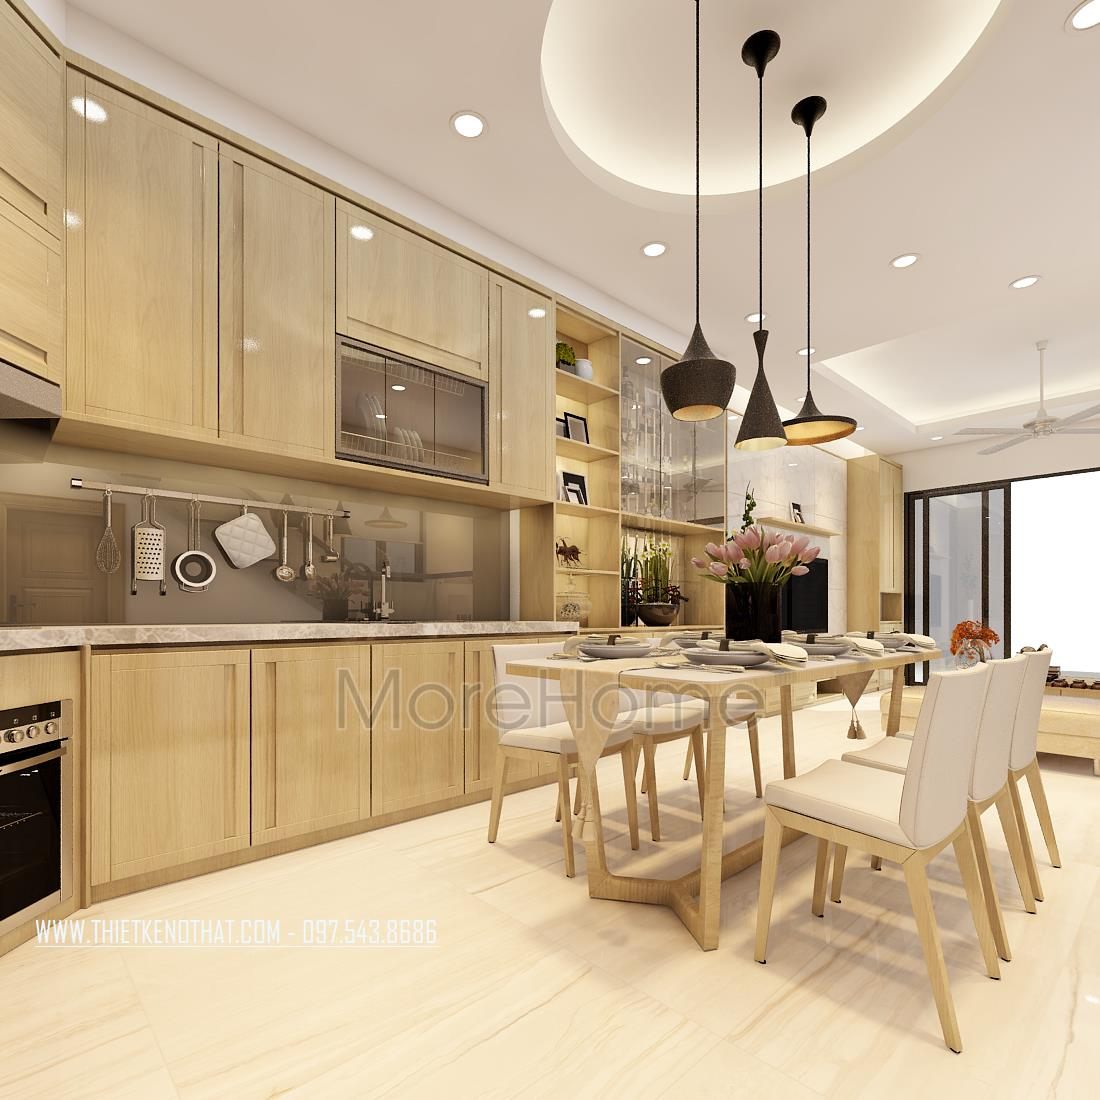 Thiết kế nội thất khu bếp nhà phố Long Biên